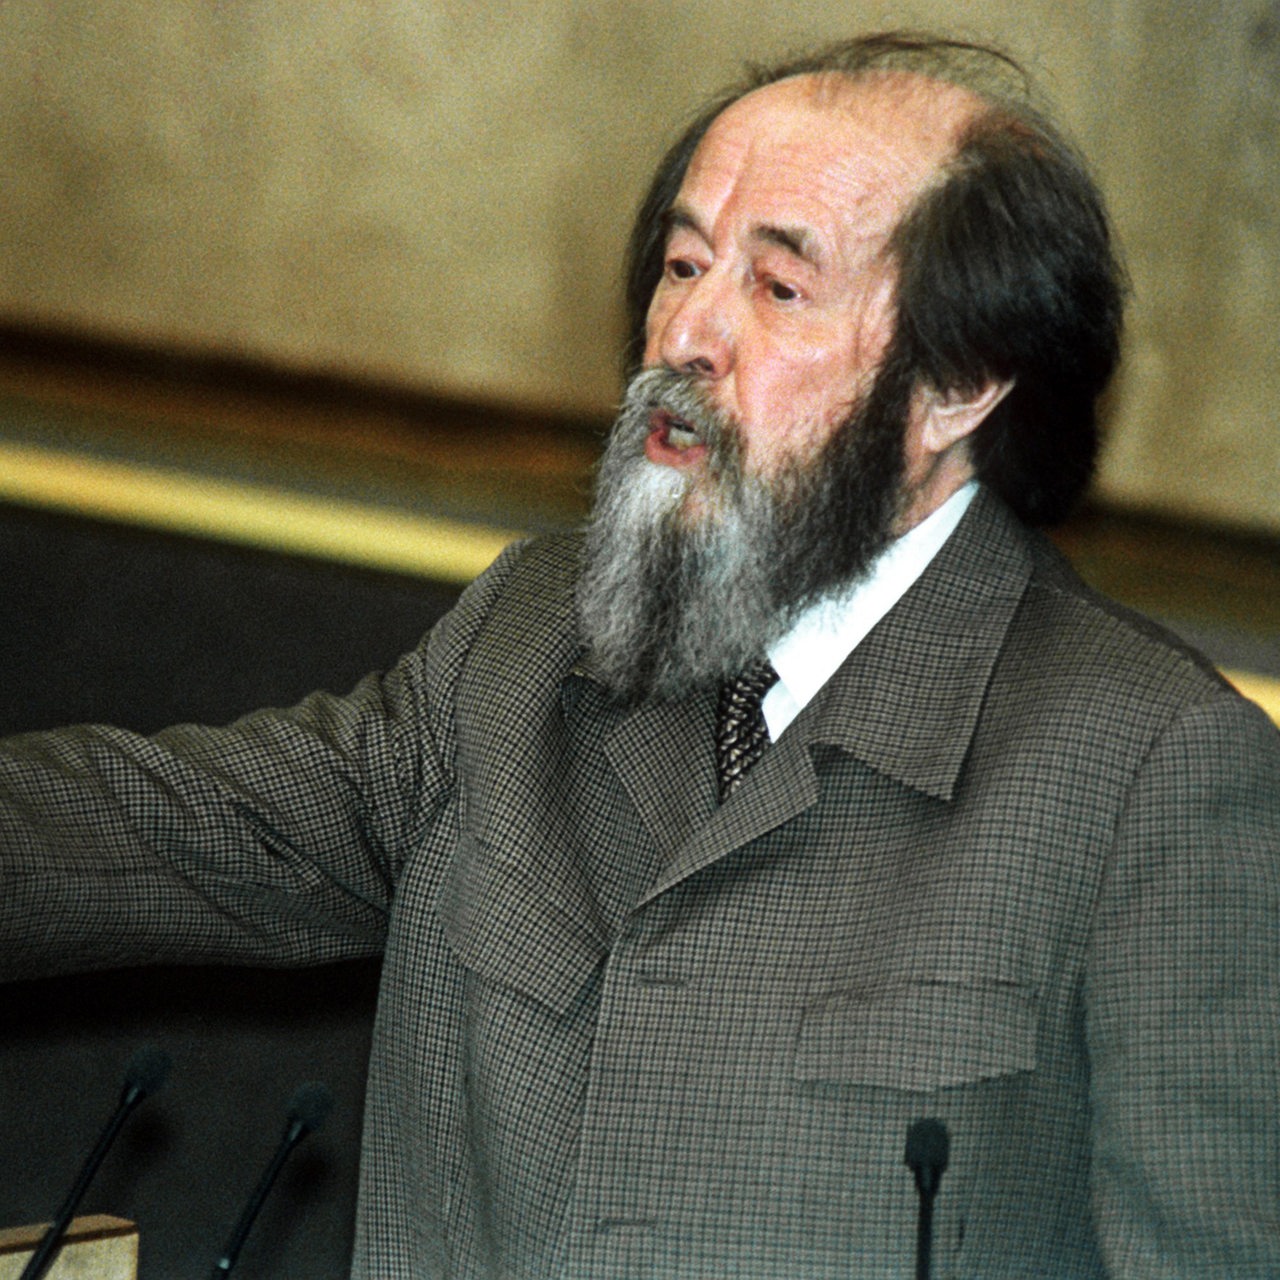 Der russische Schriftsteller ("Krebsstation"; "Der Archipel Gulag") und Nobelpreisträger für Literatur 1970 kritisiert während seiner Rede vor der Staatsduma in Moskau  während einer Rede vor der russischen Staatsduma.